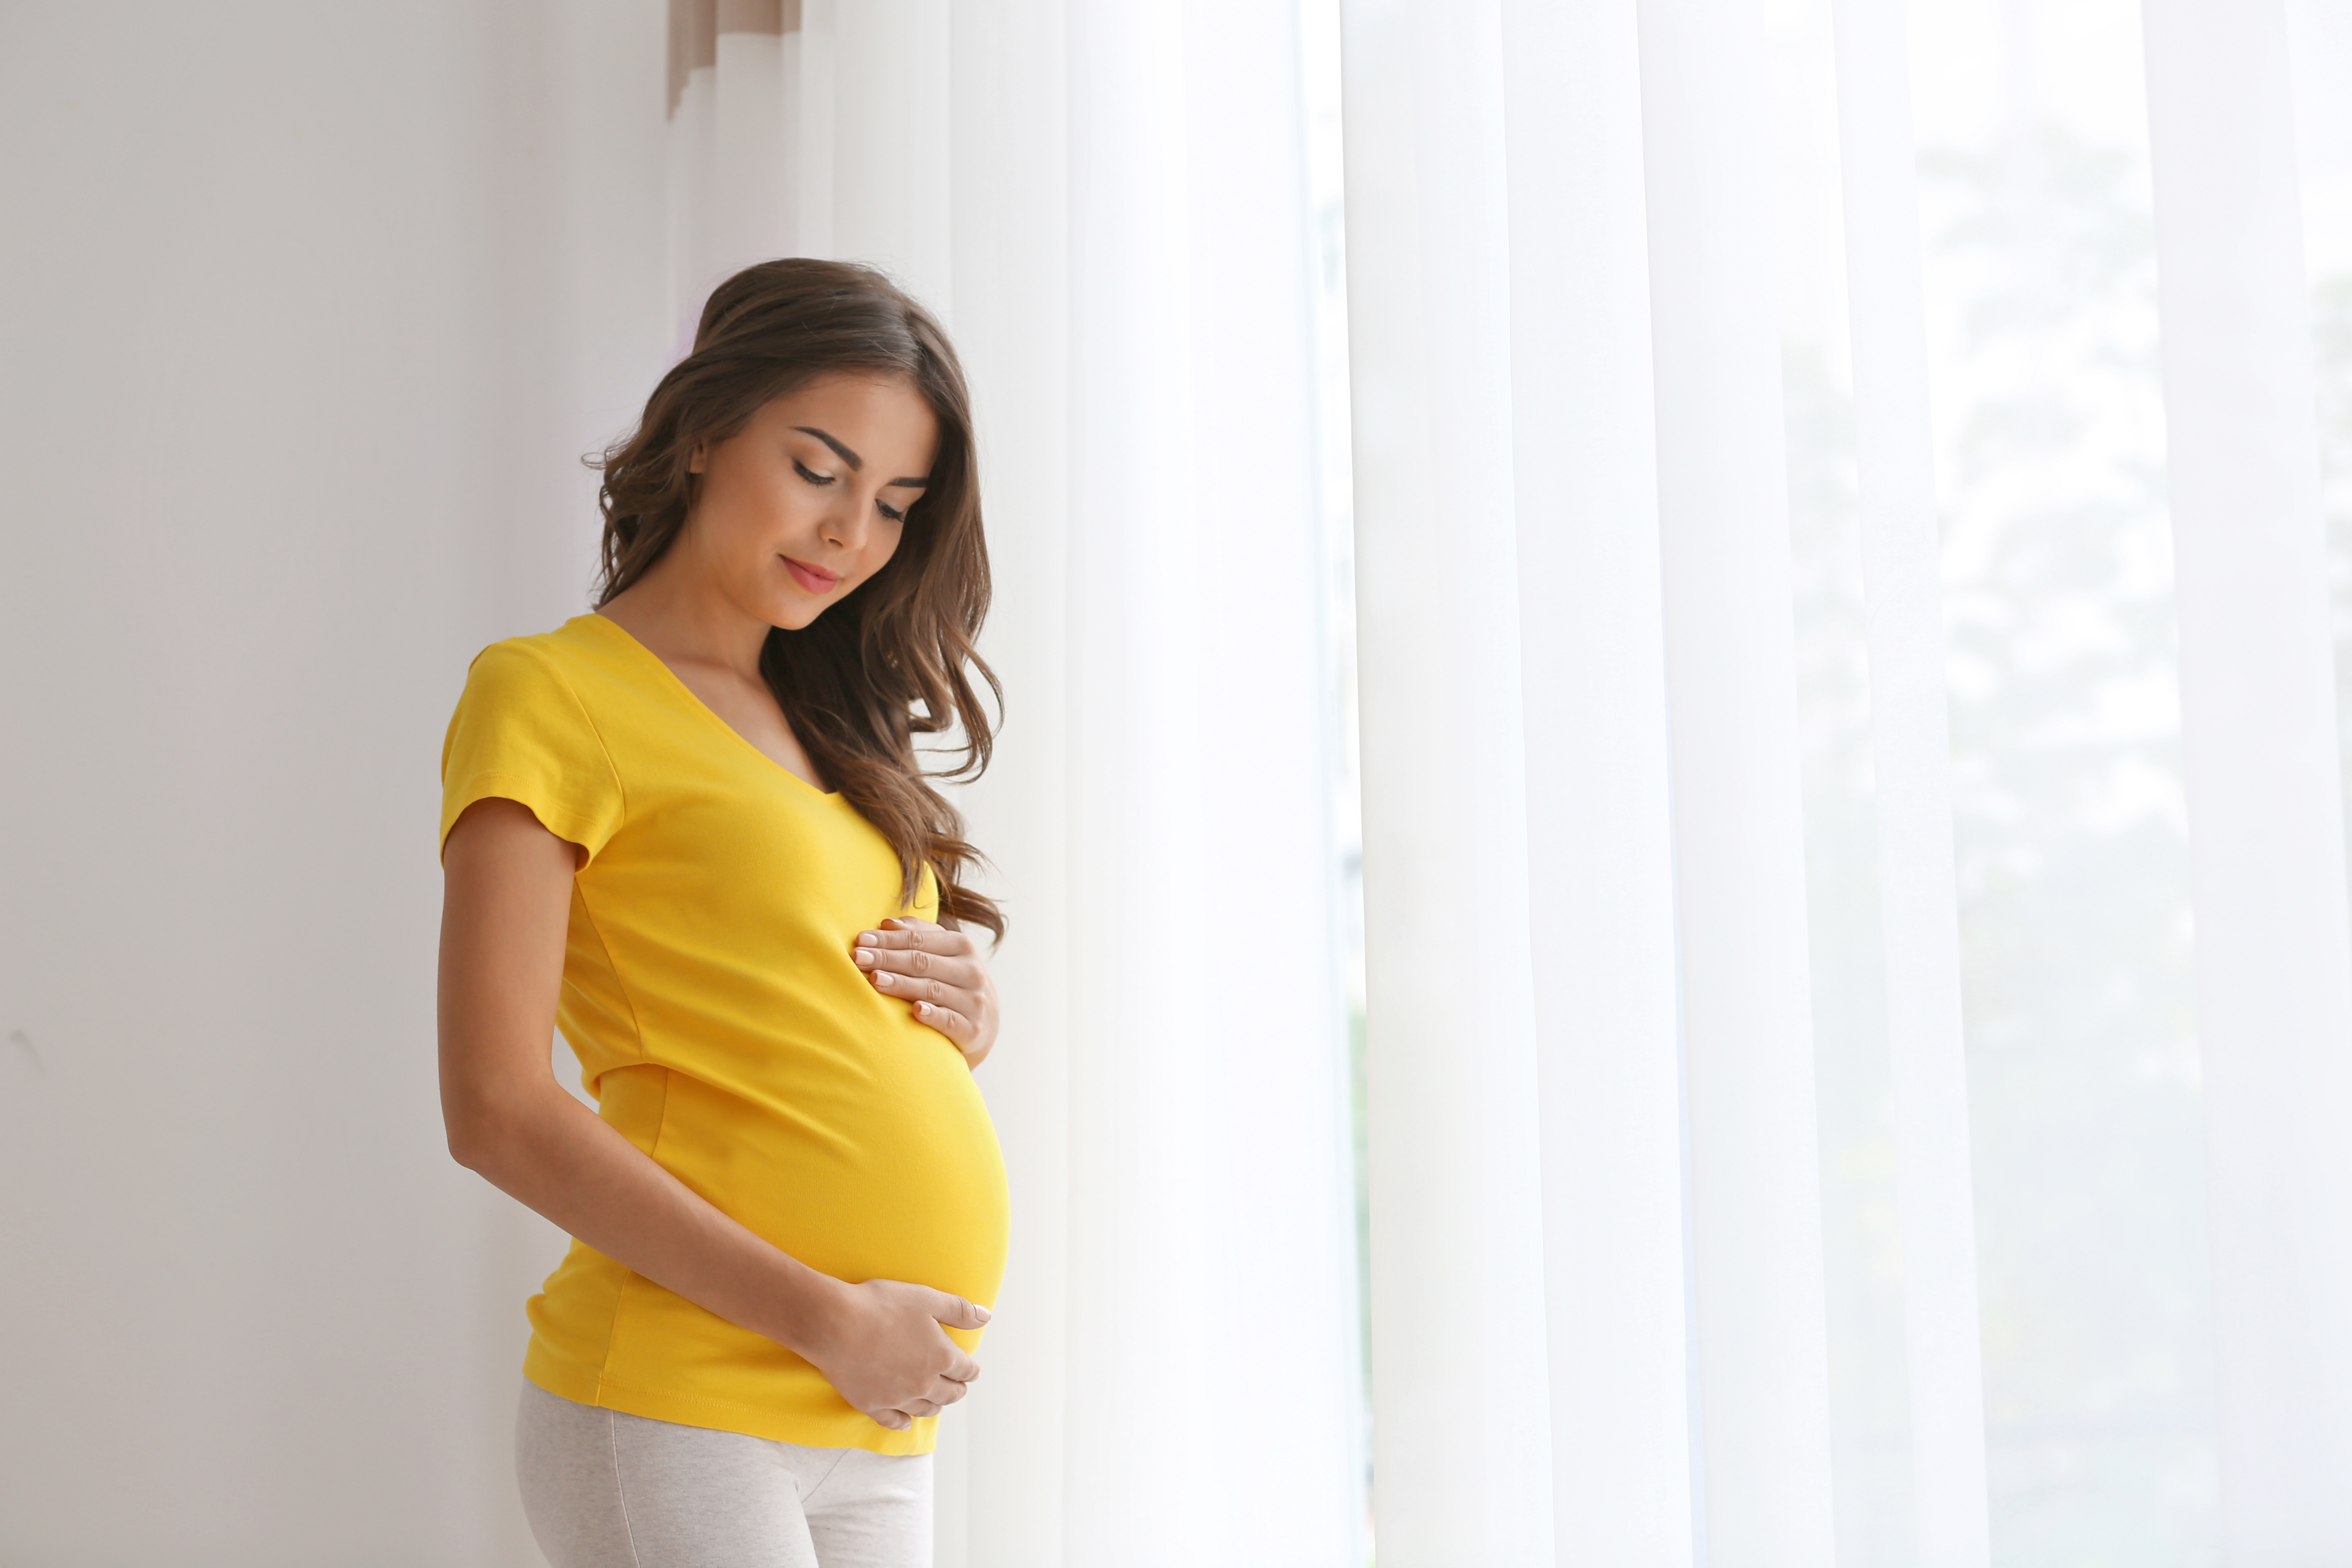 Eine schwangere Frau in einem gelben Shirt, die ihren Bauch hält | Quelle: Shutterstock